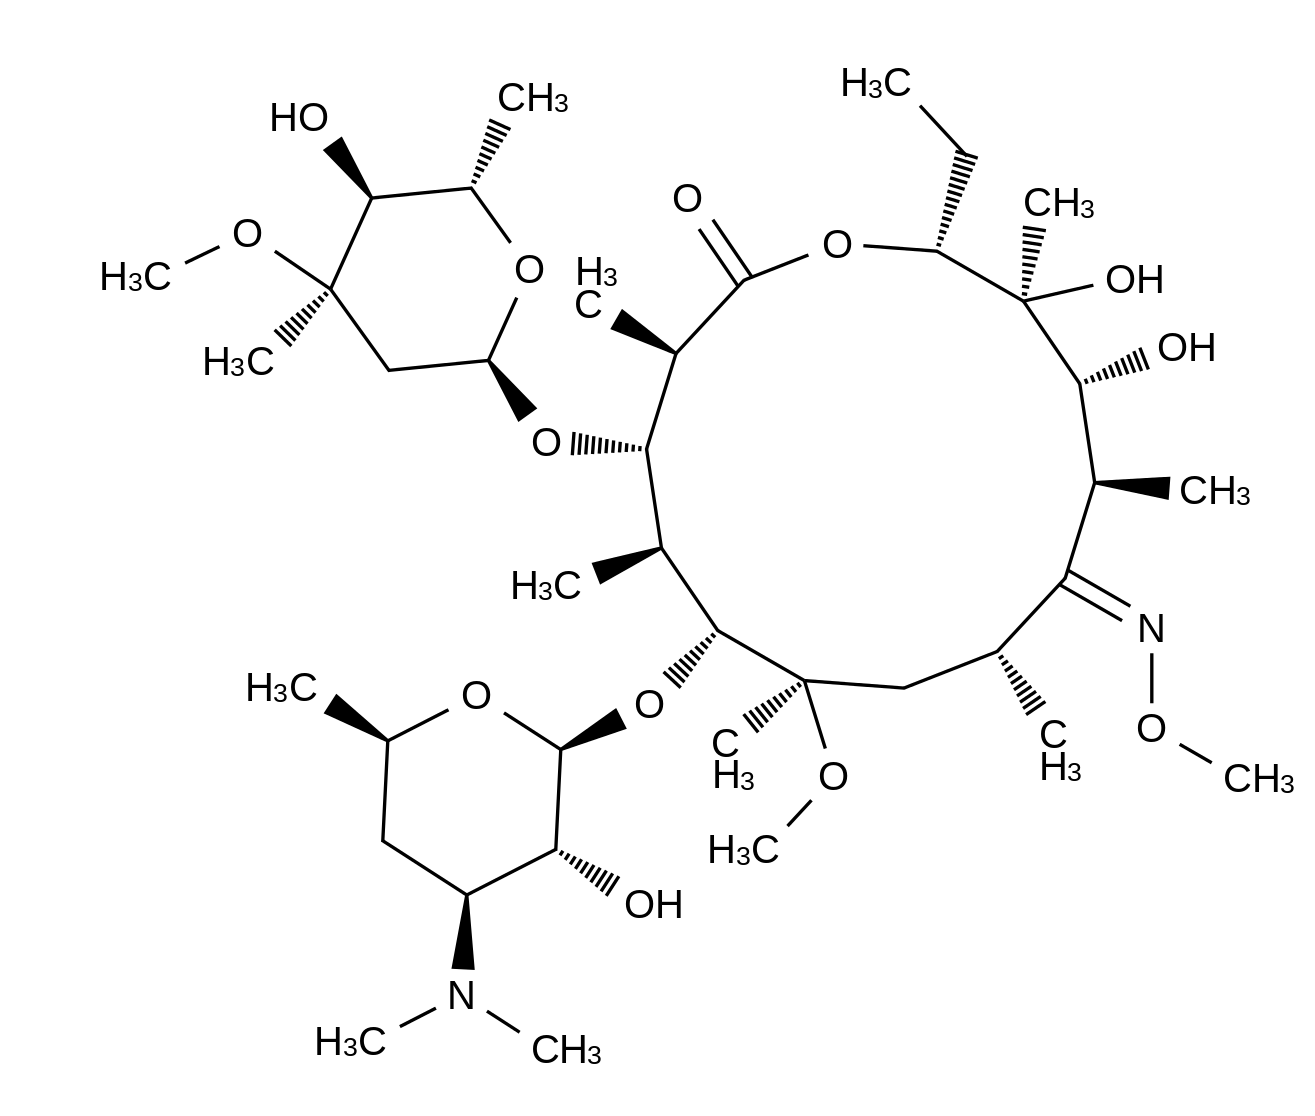 Clarithromycin (9E)-O-Methyloxime